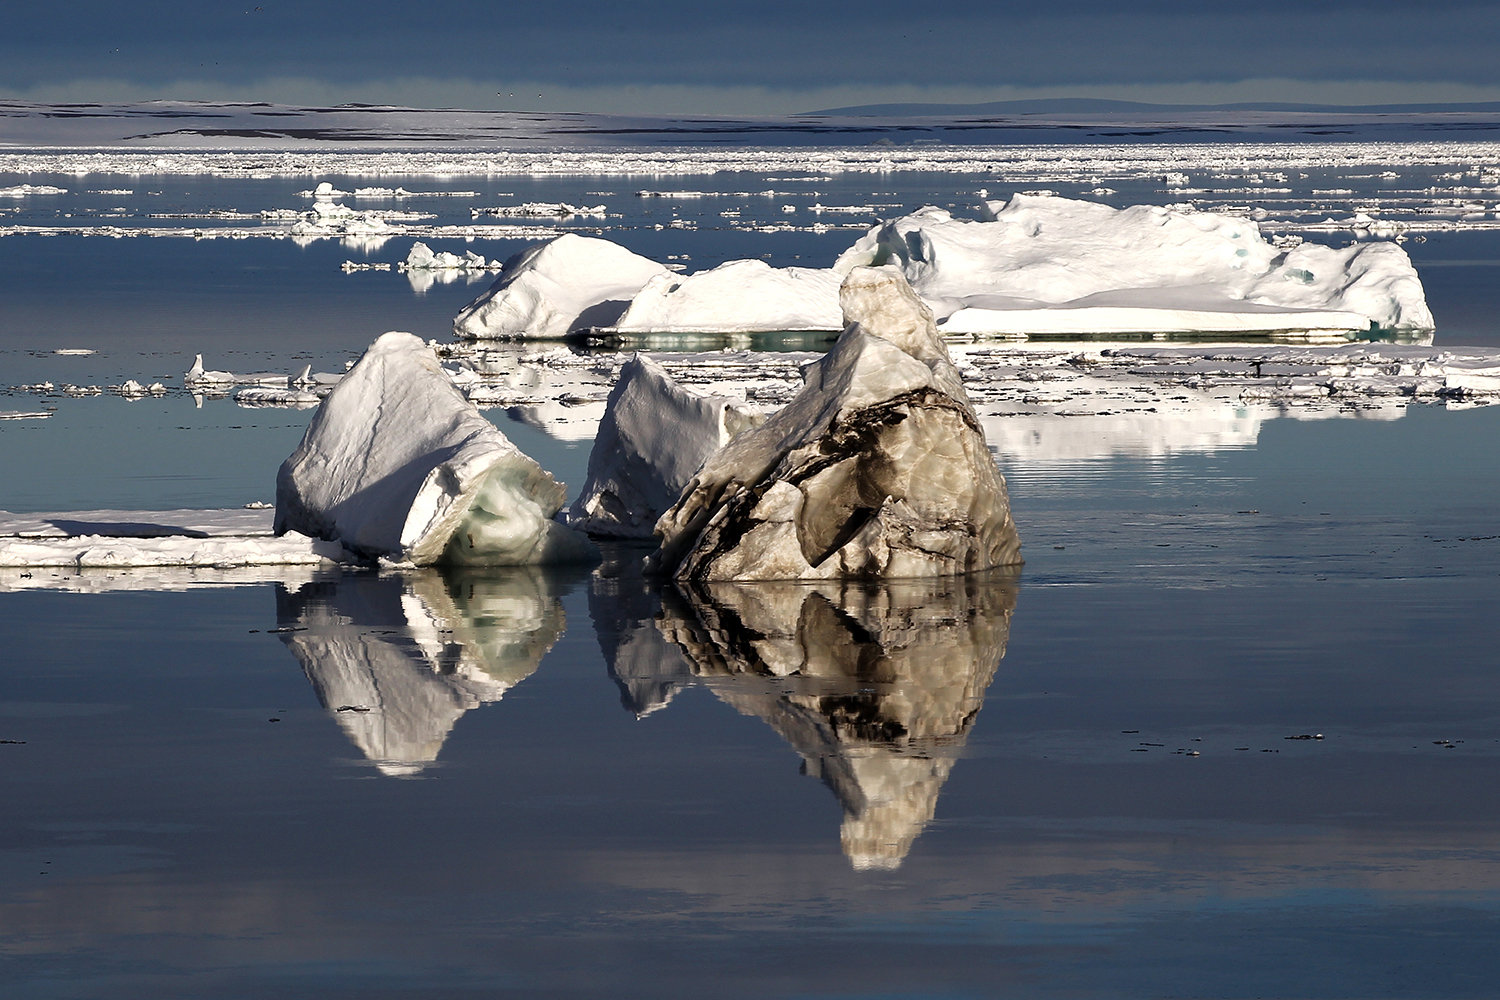 Айсберг в акватории архипелага Земля Франца-Иосифа